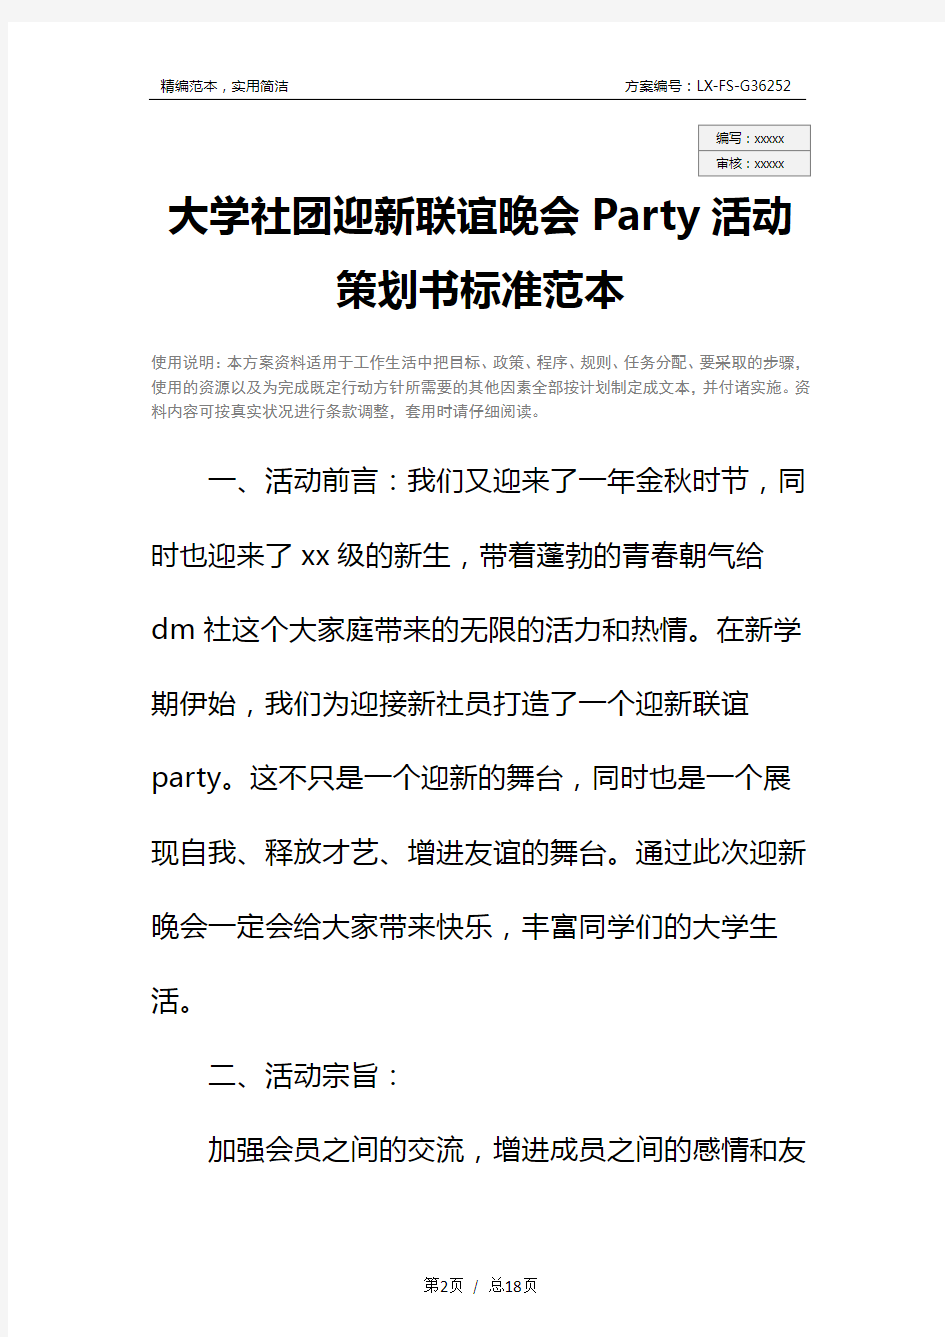 大学社团迎新联谊晚会Party活动策划书标准范本